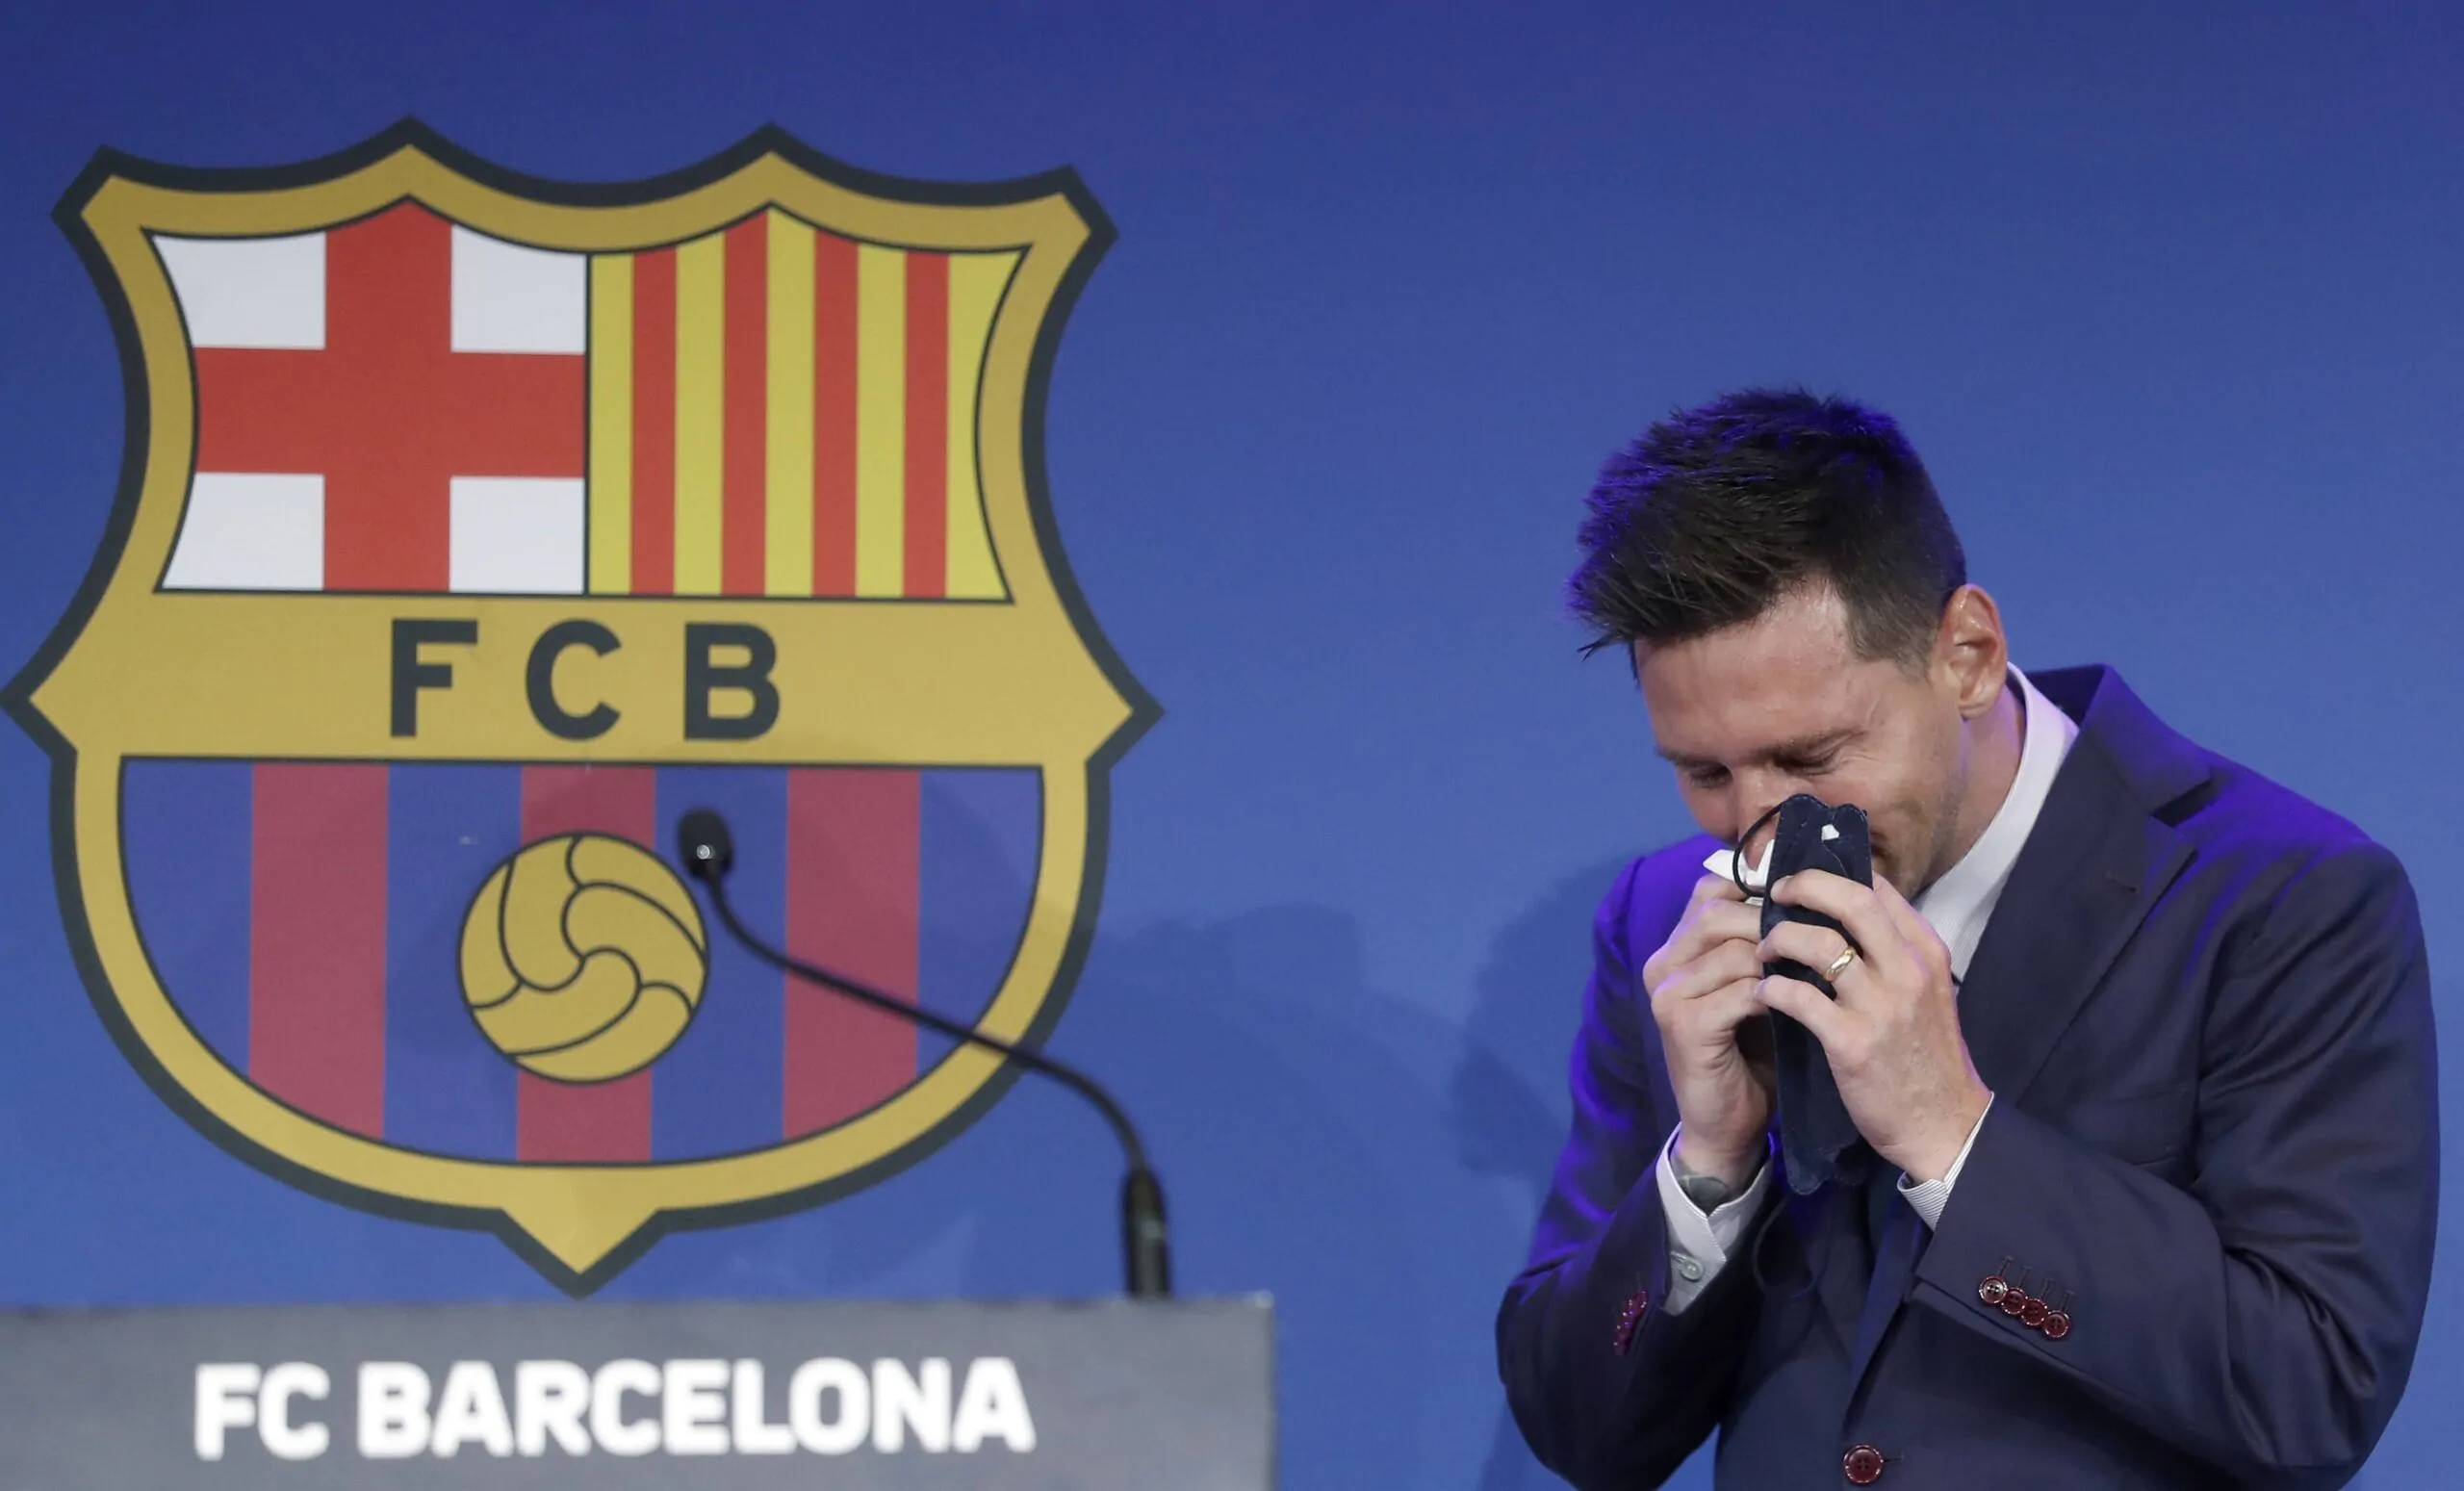 Barcellona, attacco di Messi a Laporta: “Nessuno mi ha mai chiesto di giocare gratis”